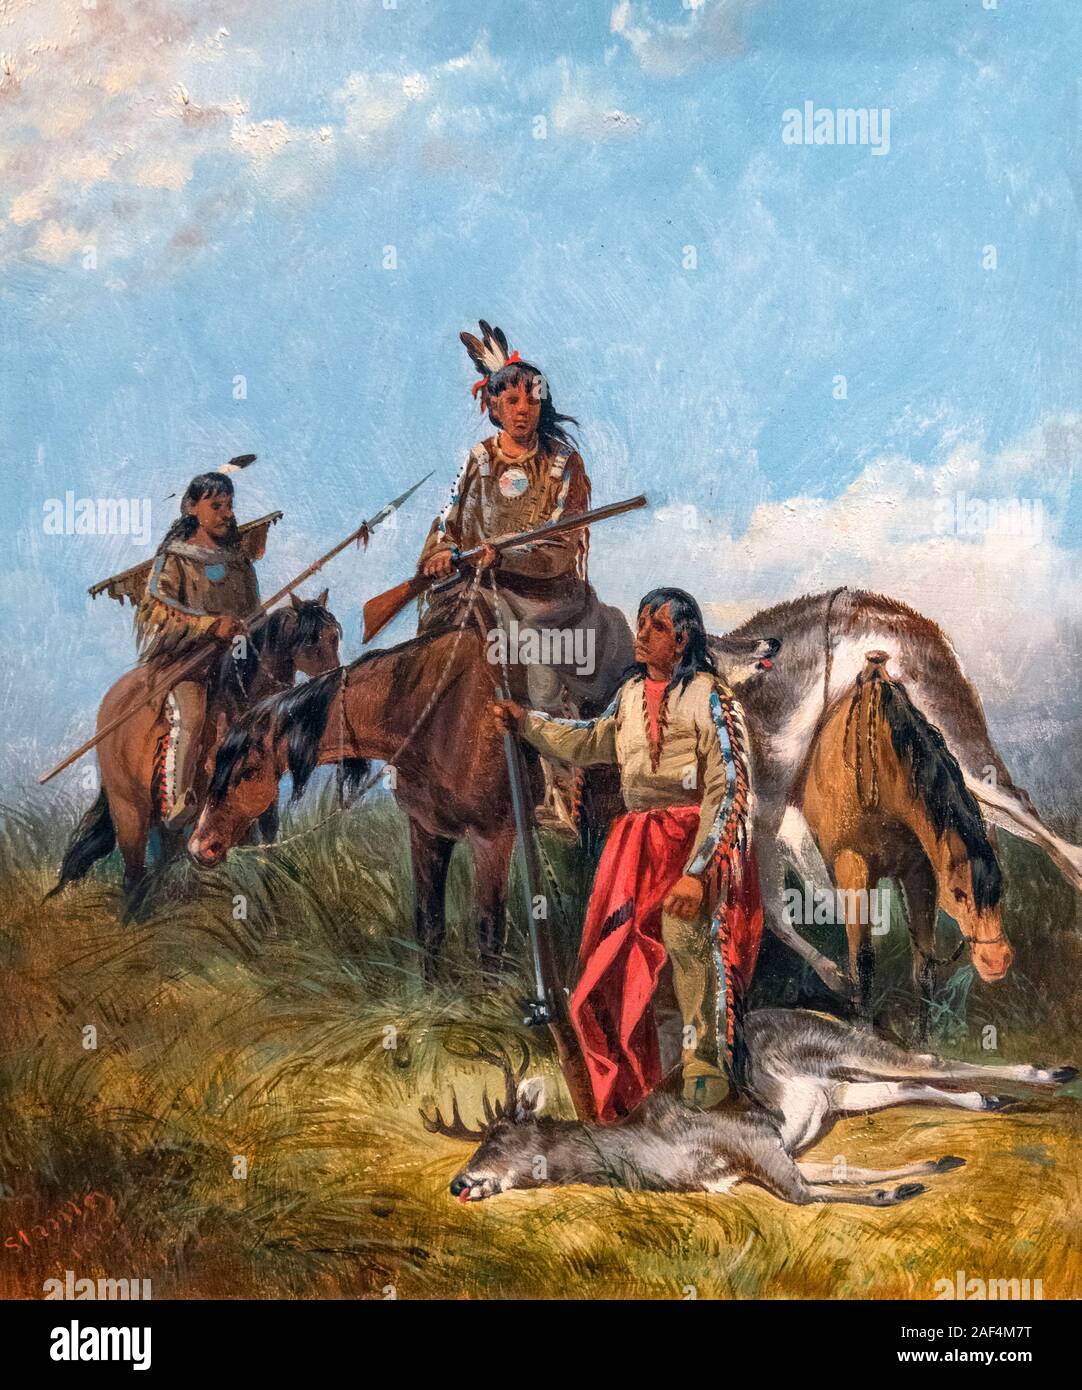 https://c8.alamy.com/comp/2AF4M7T/indians-hunting-by-john-mix-stanley-1814-1872-oil-on-composition-board-1867-2AF4M7T.jpg